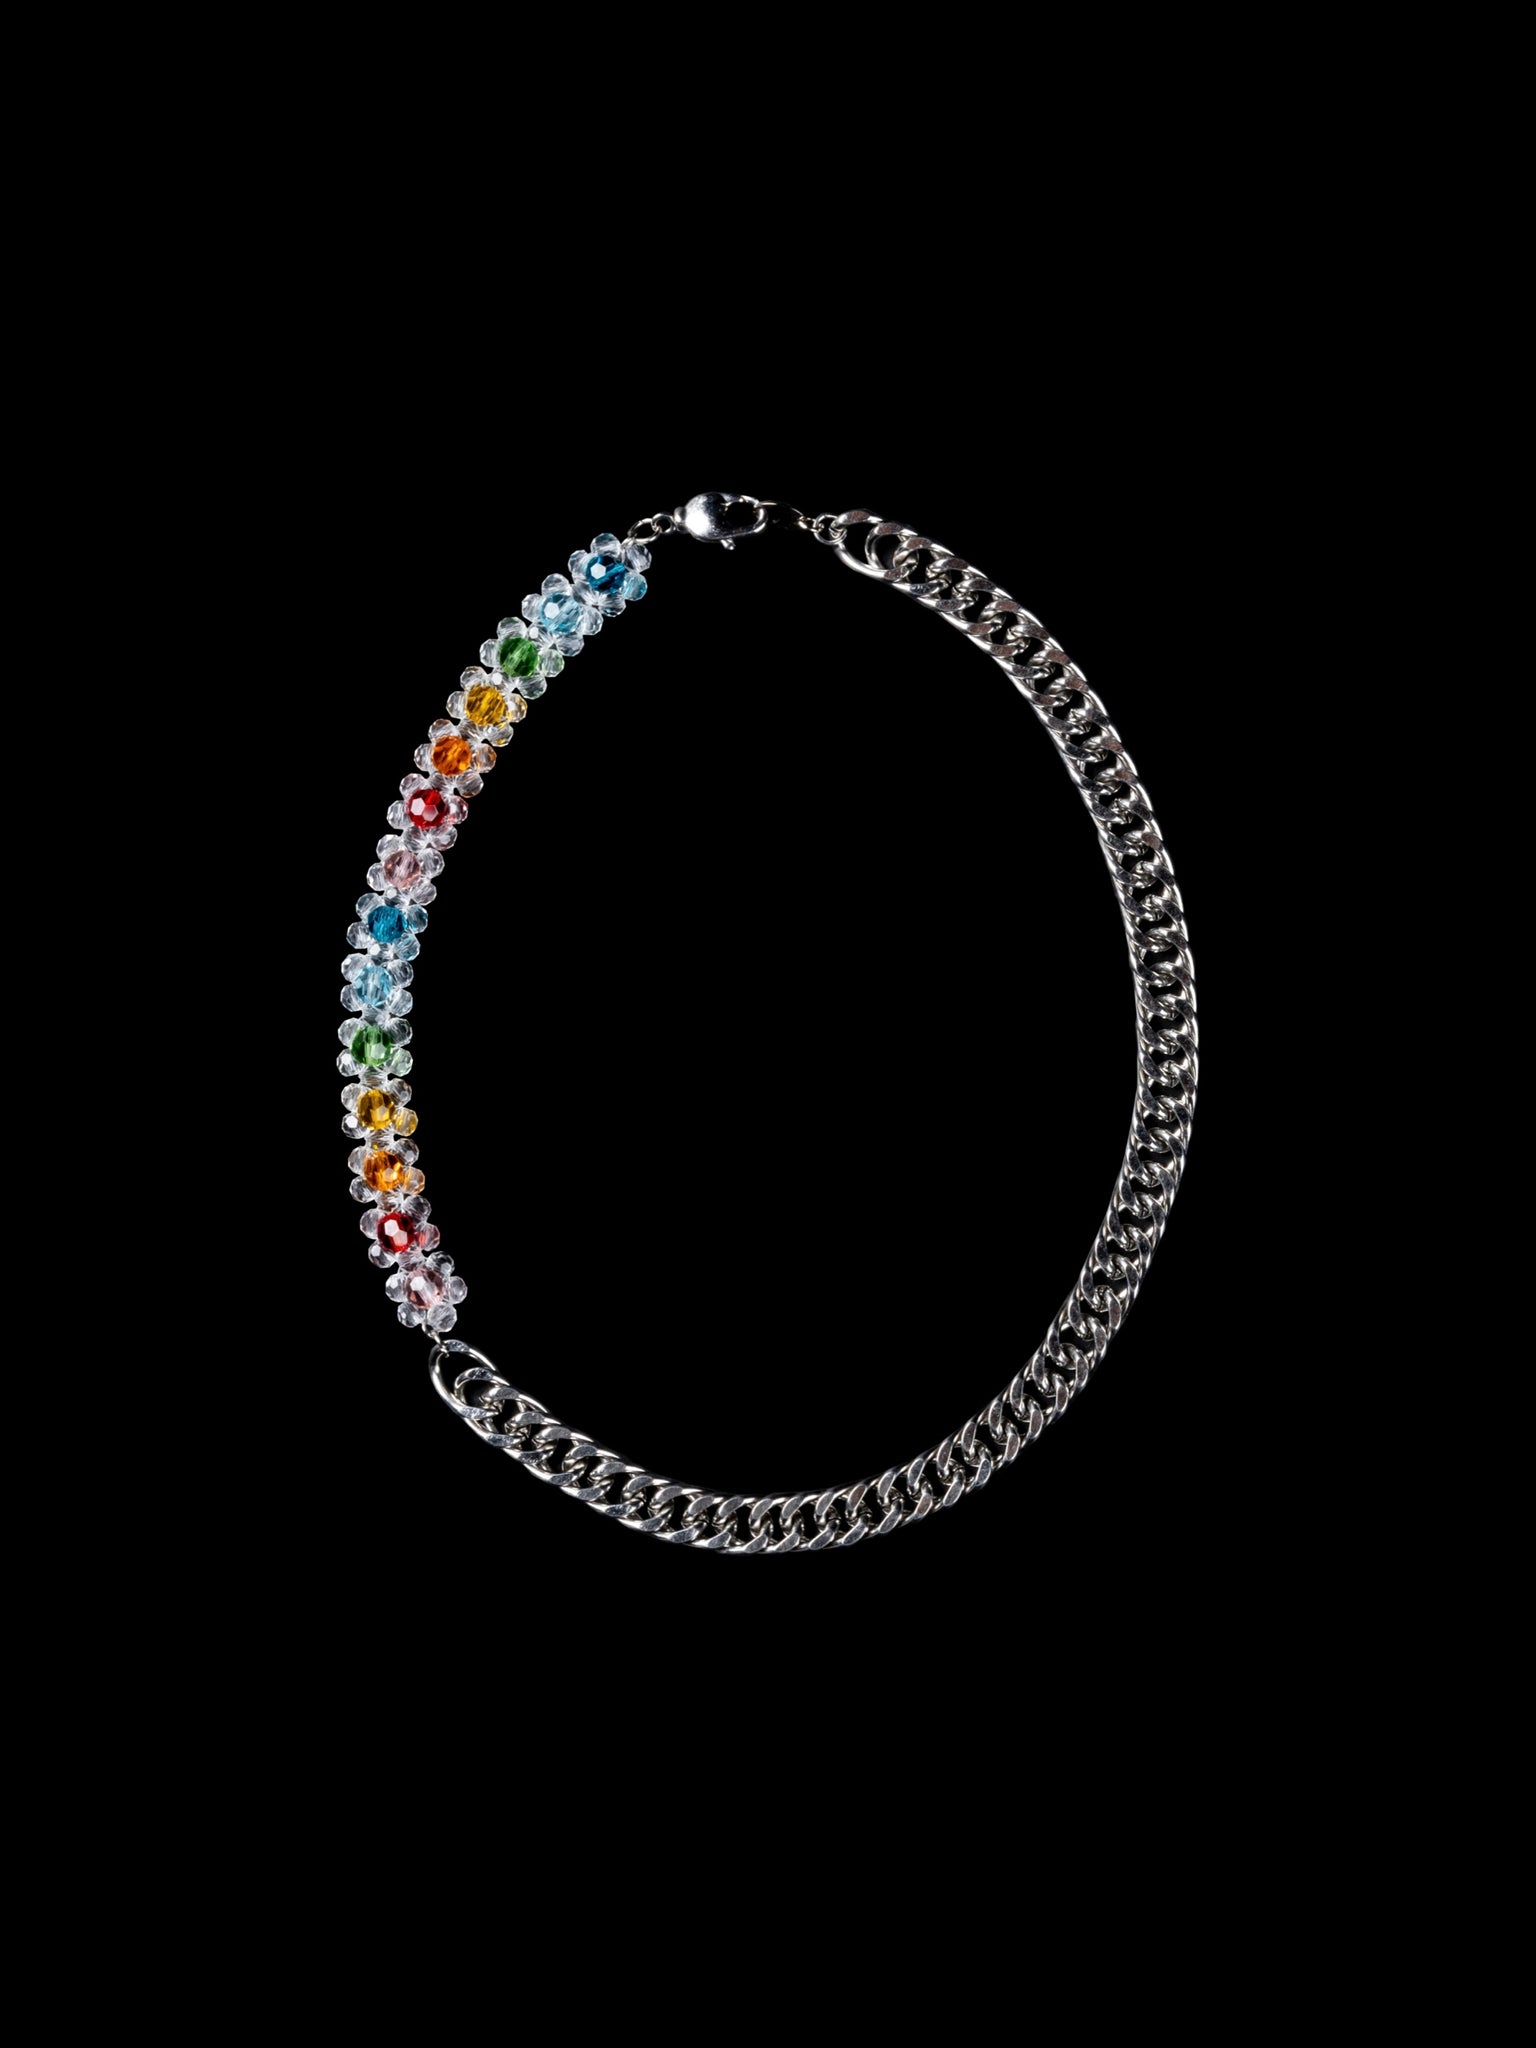 Crystal Bead Rainbow Beaded Chain Necklace